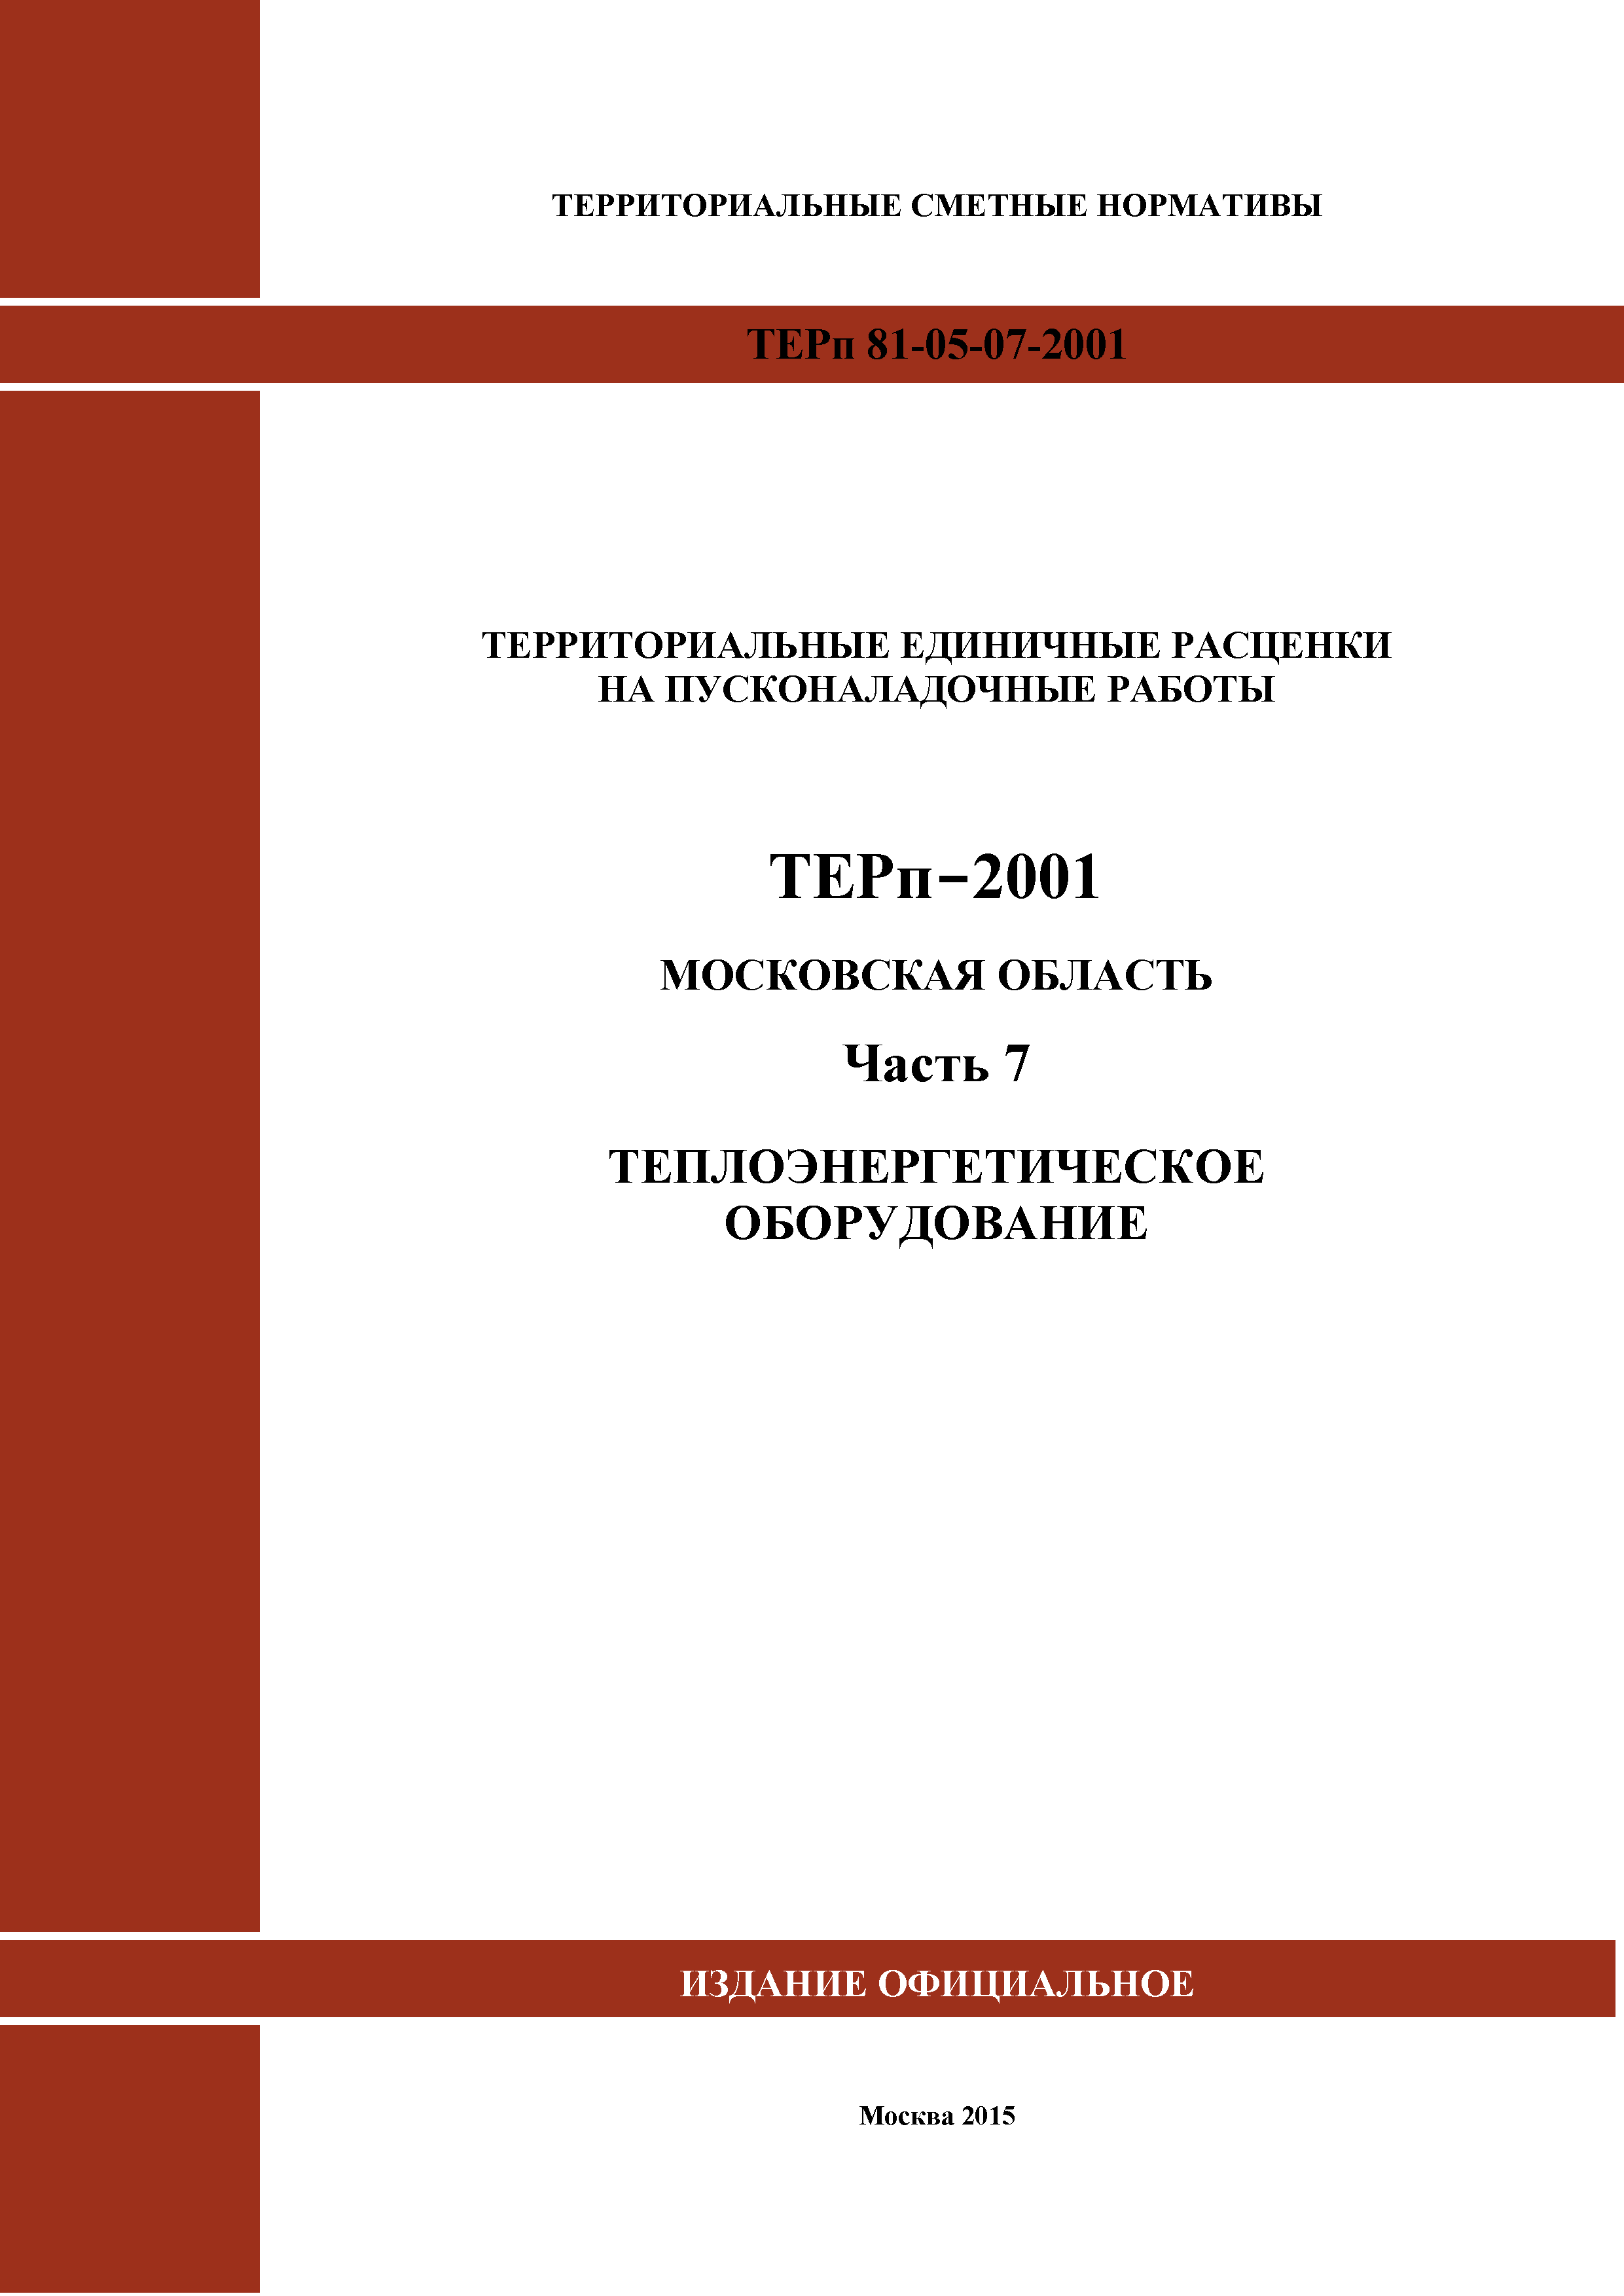 ТЕРп 7-2001 Московская область